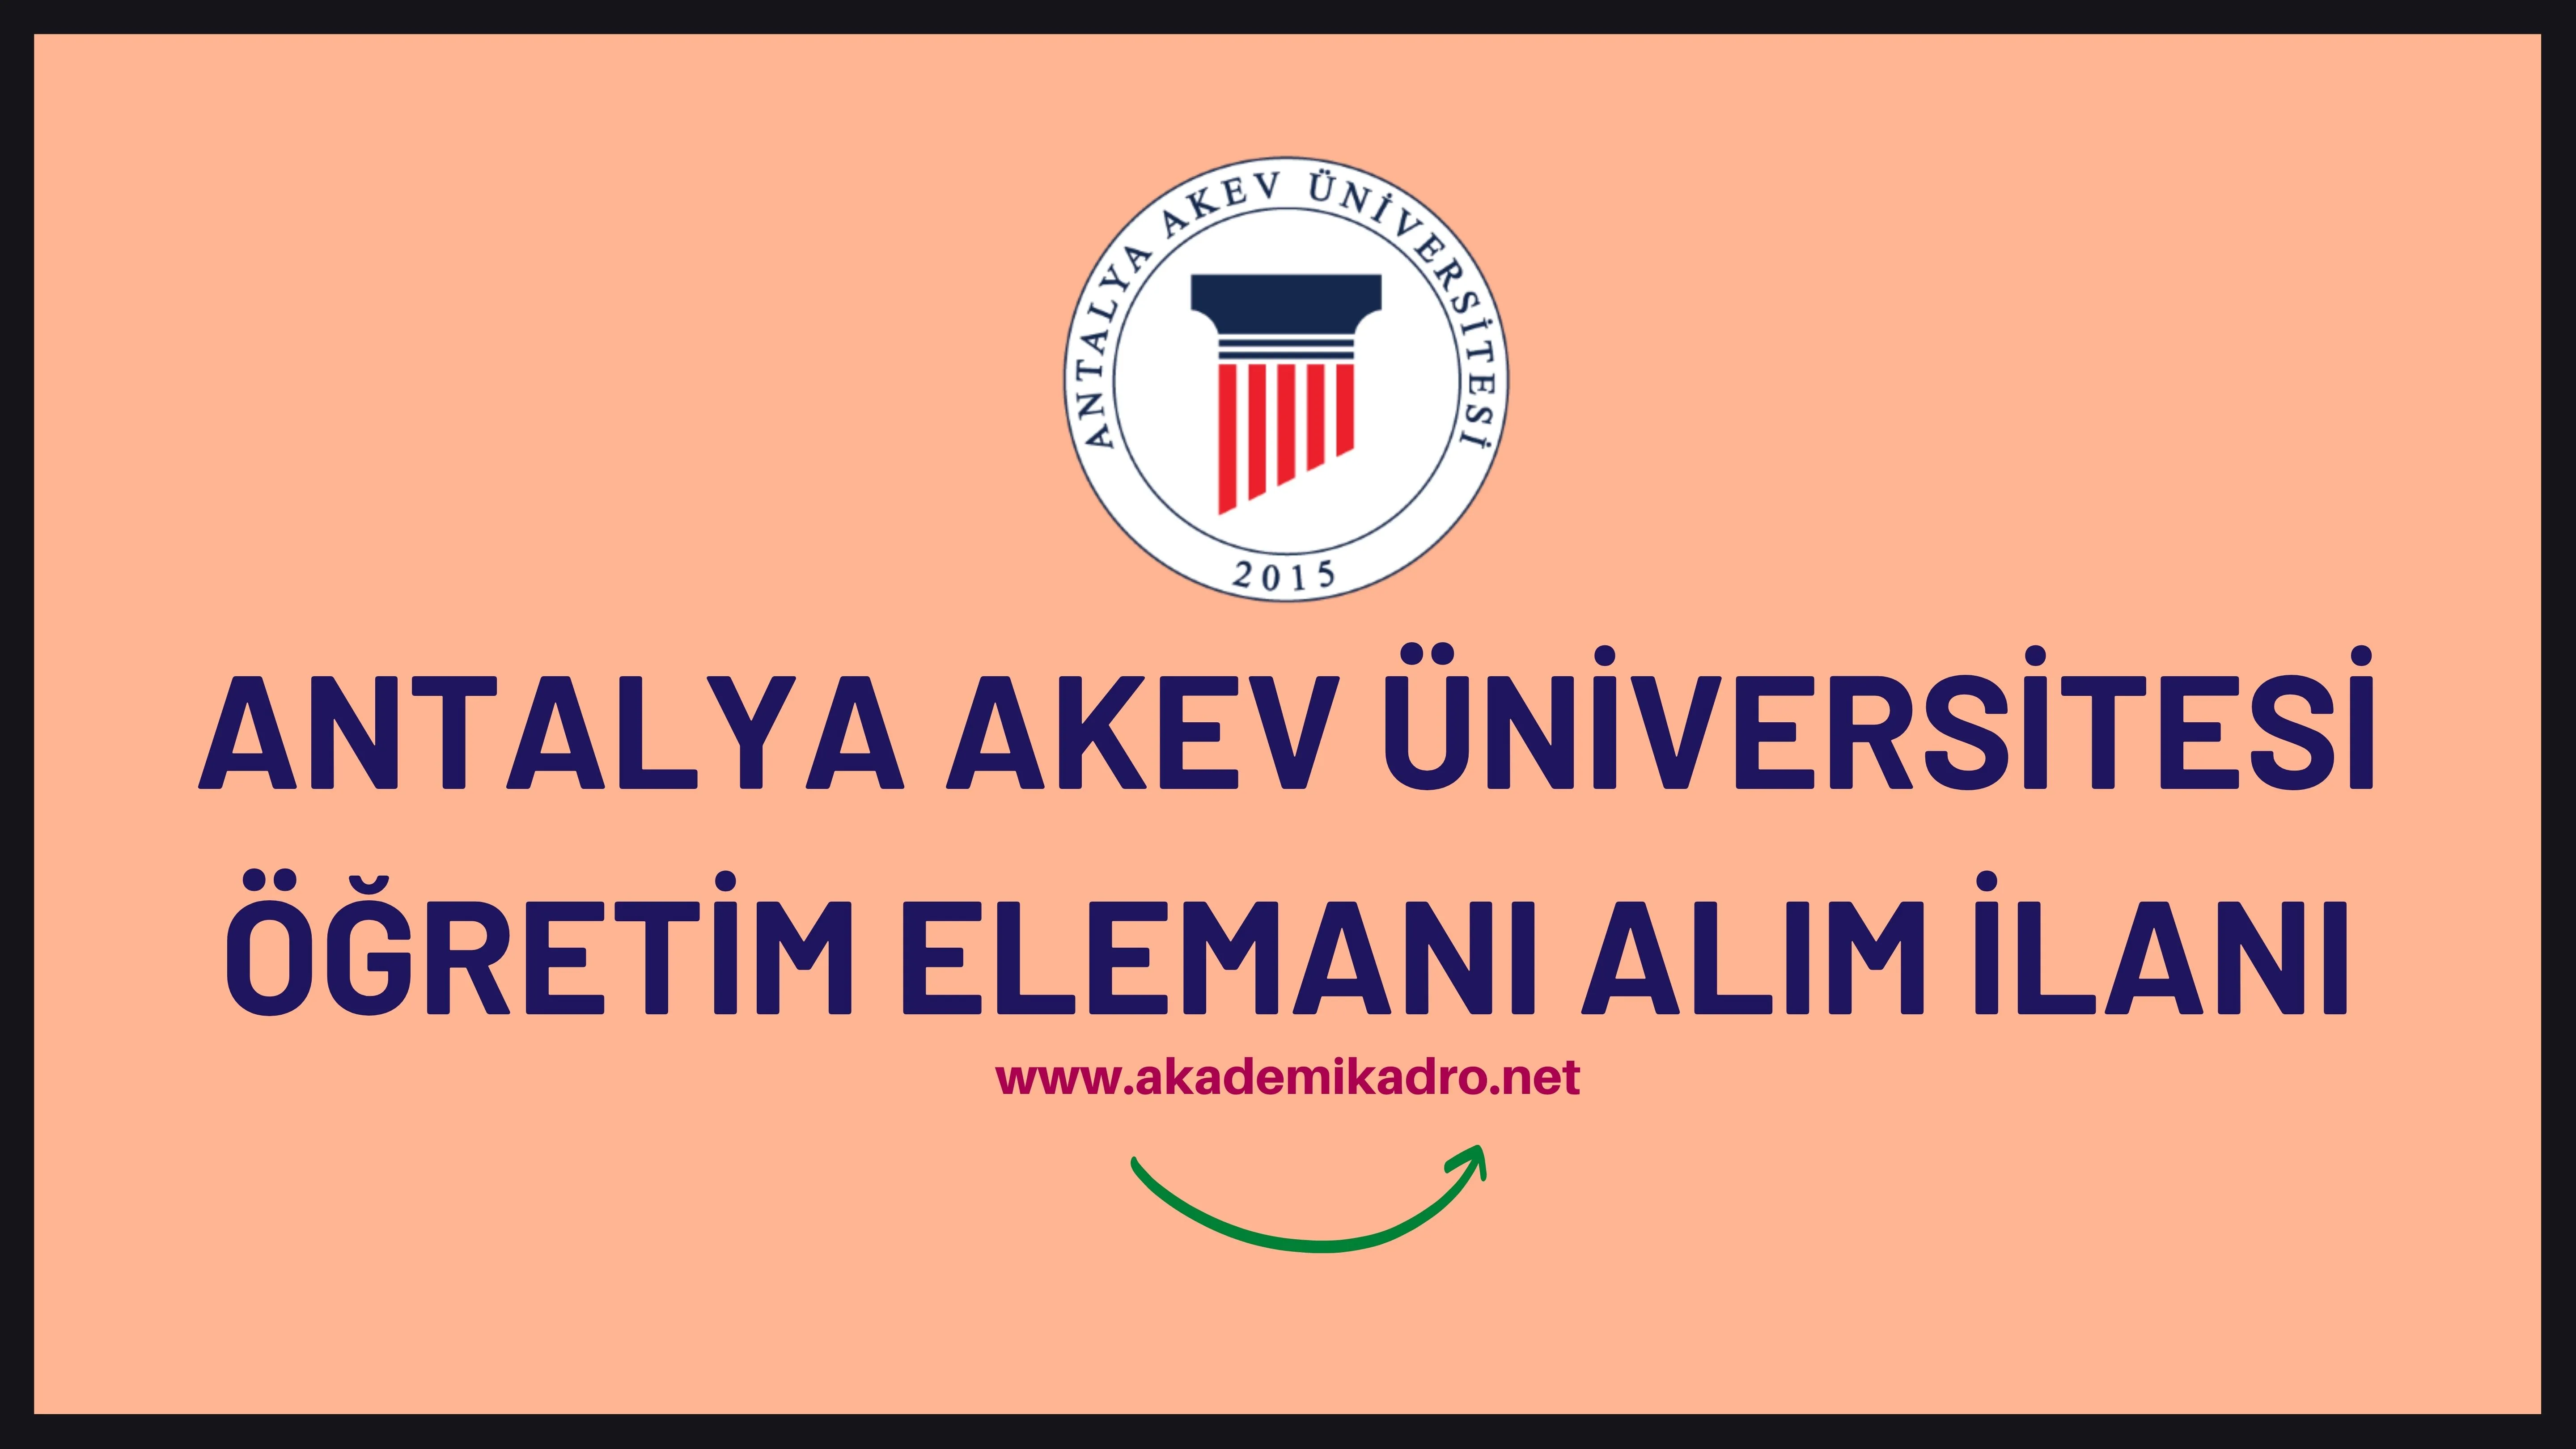 Antalya Akev Üniversitesi 13 Öğretim üyesi, 10 Öğretim görevlisi ve 2 Araştırma görevlisi alacaktır. Son başvuru tarihi 08 Kasım 2022